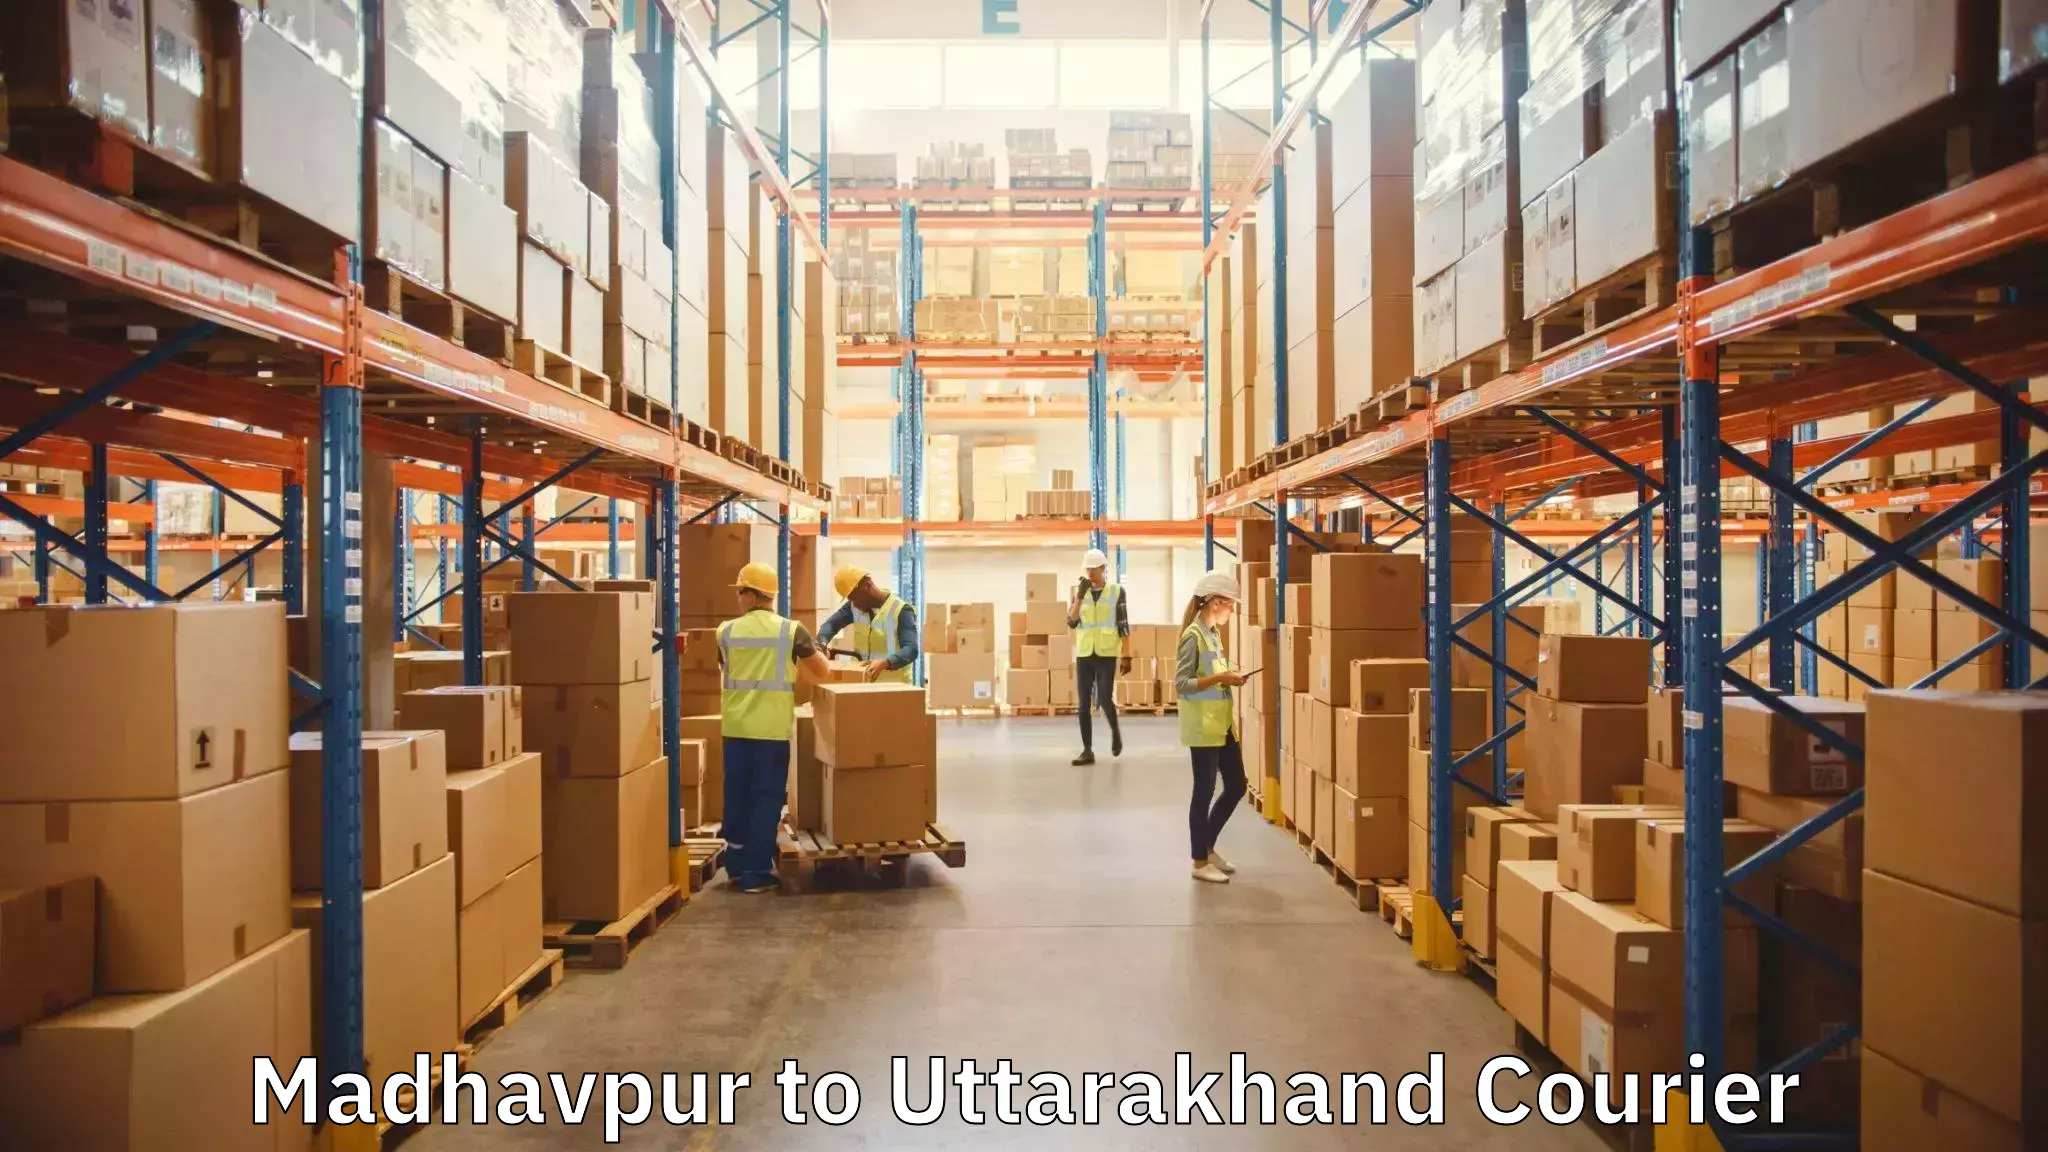 Furniture transport service Madhavpur to Rudrapur